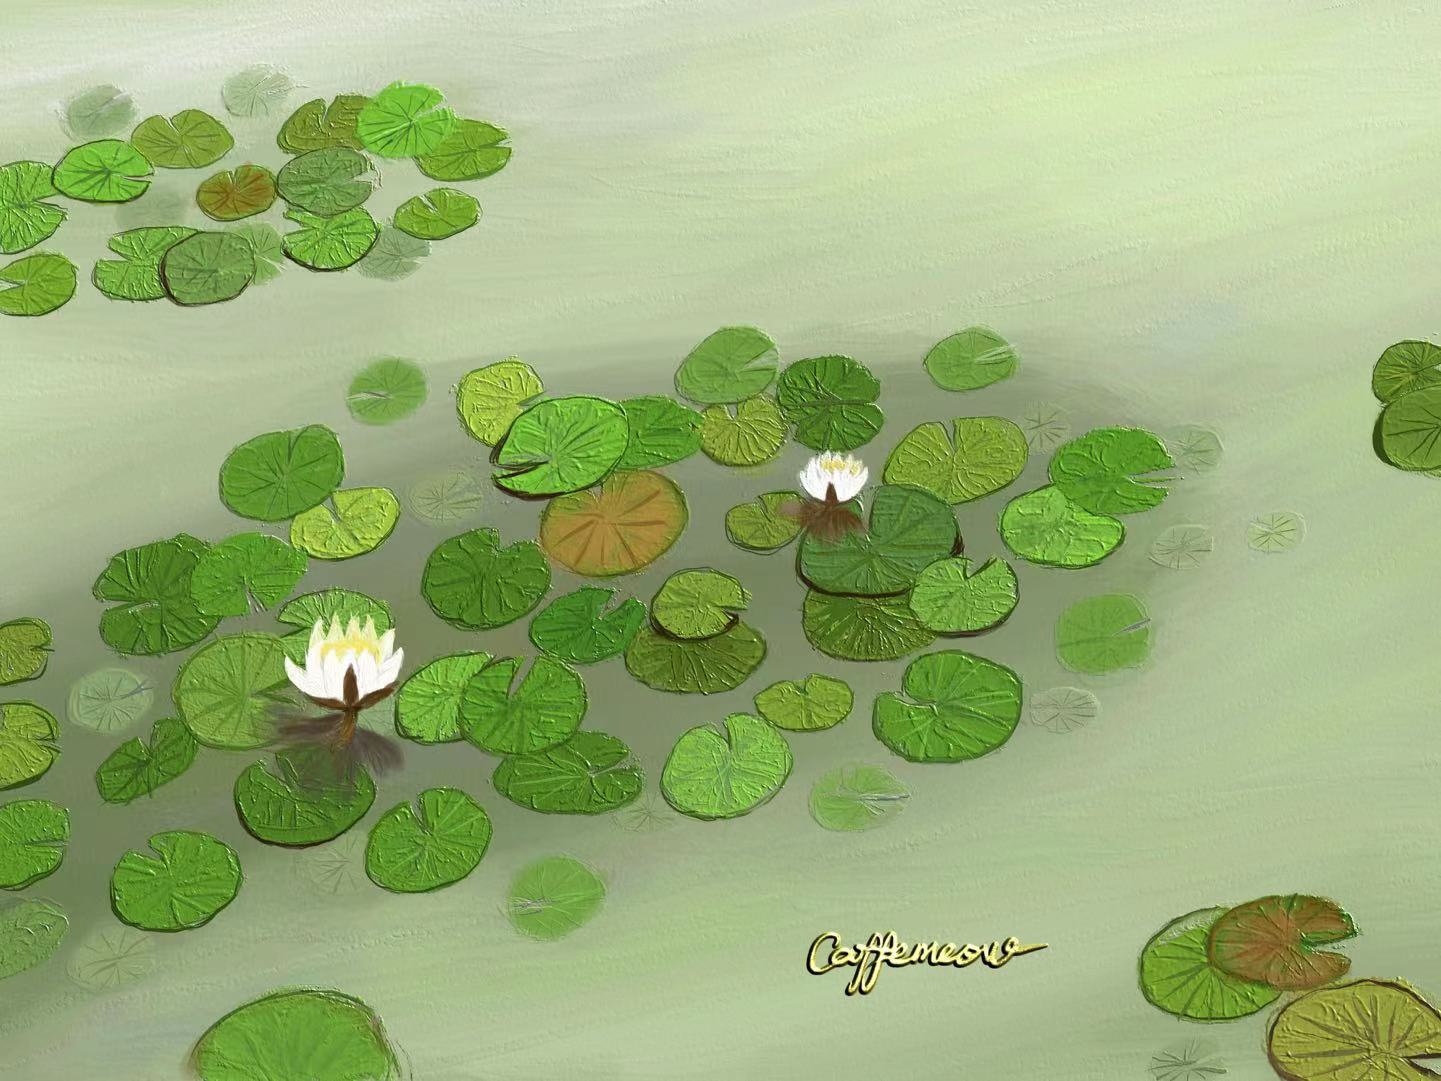 西溪湿地的睡莲-风景油画风景油画壁纸